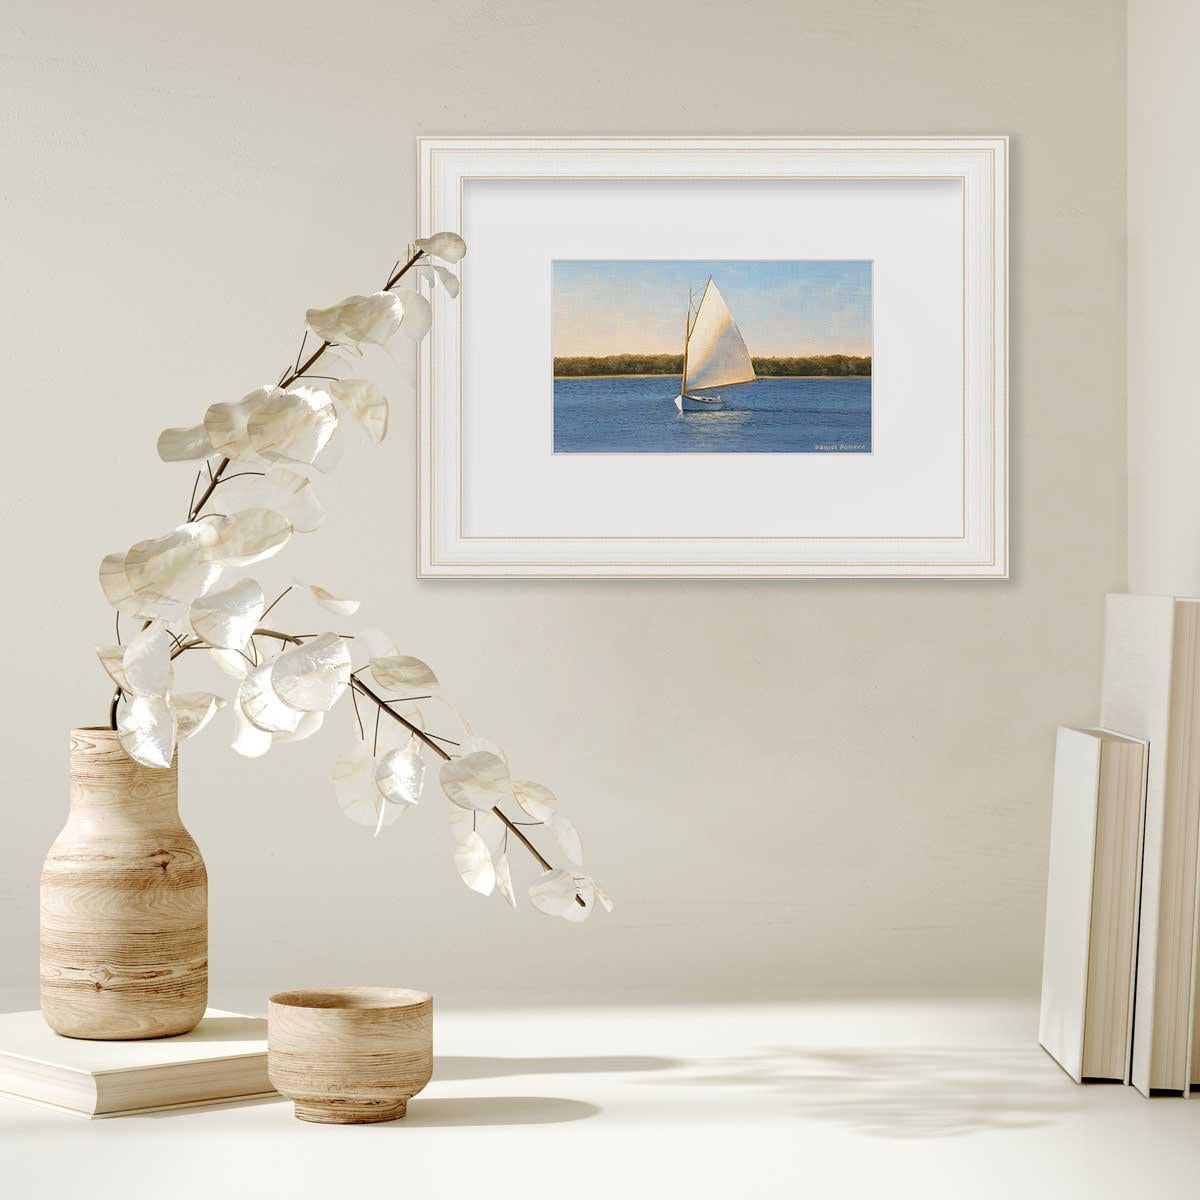 sailboat prints framed